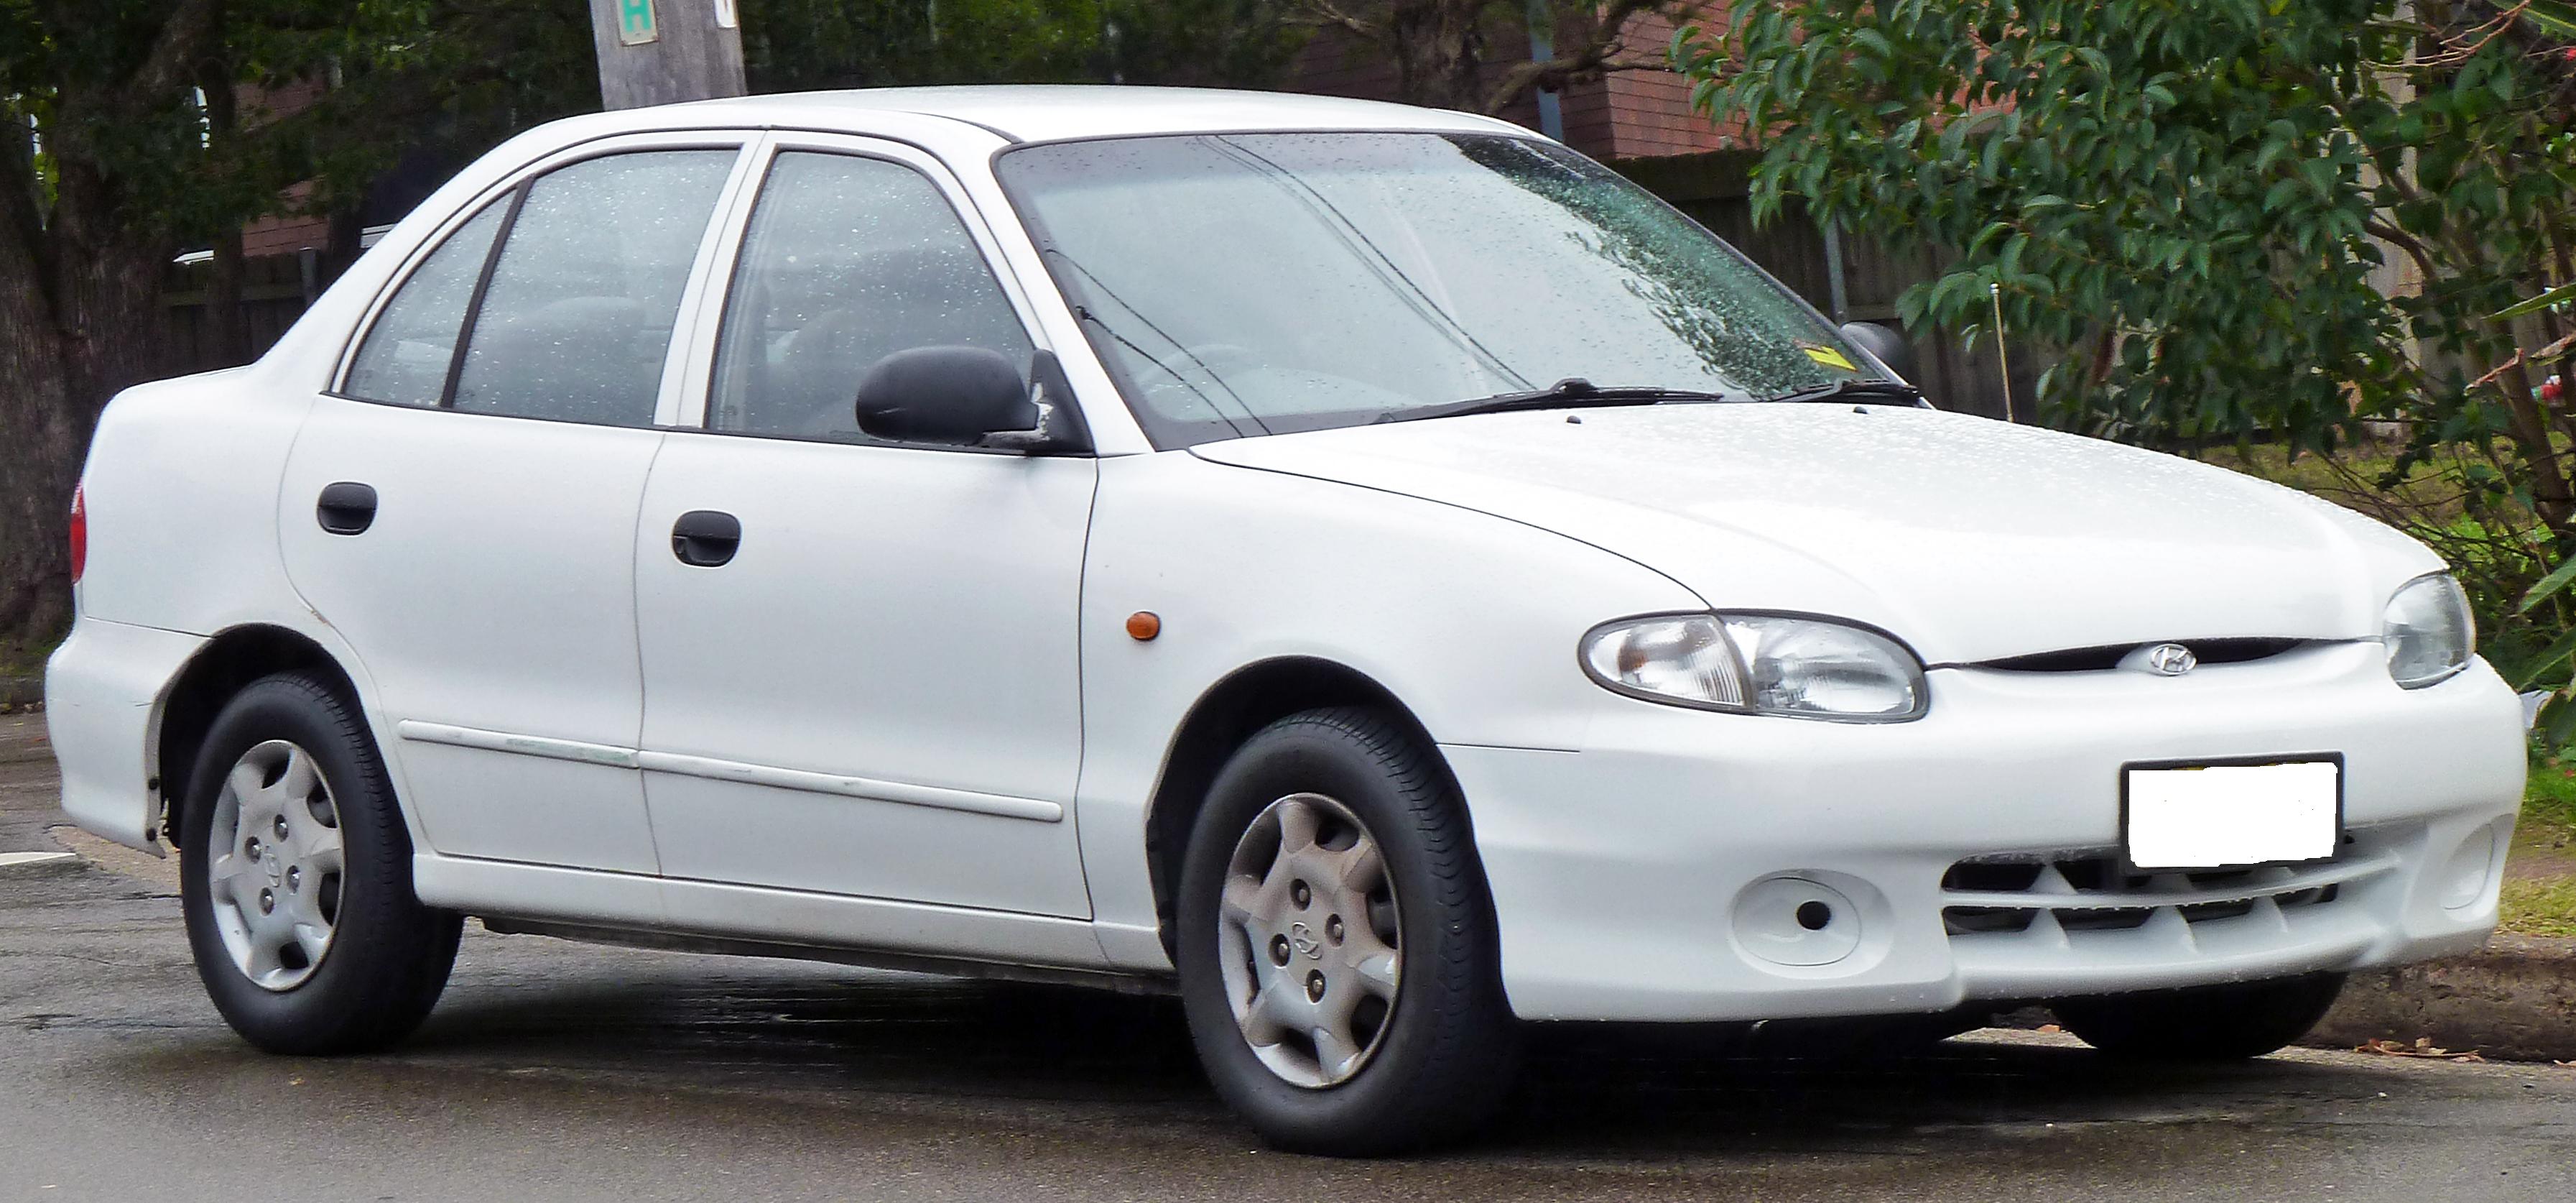 Кузовной ремонт , покраска и запчасти Hyundai Accent (97-99).